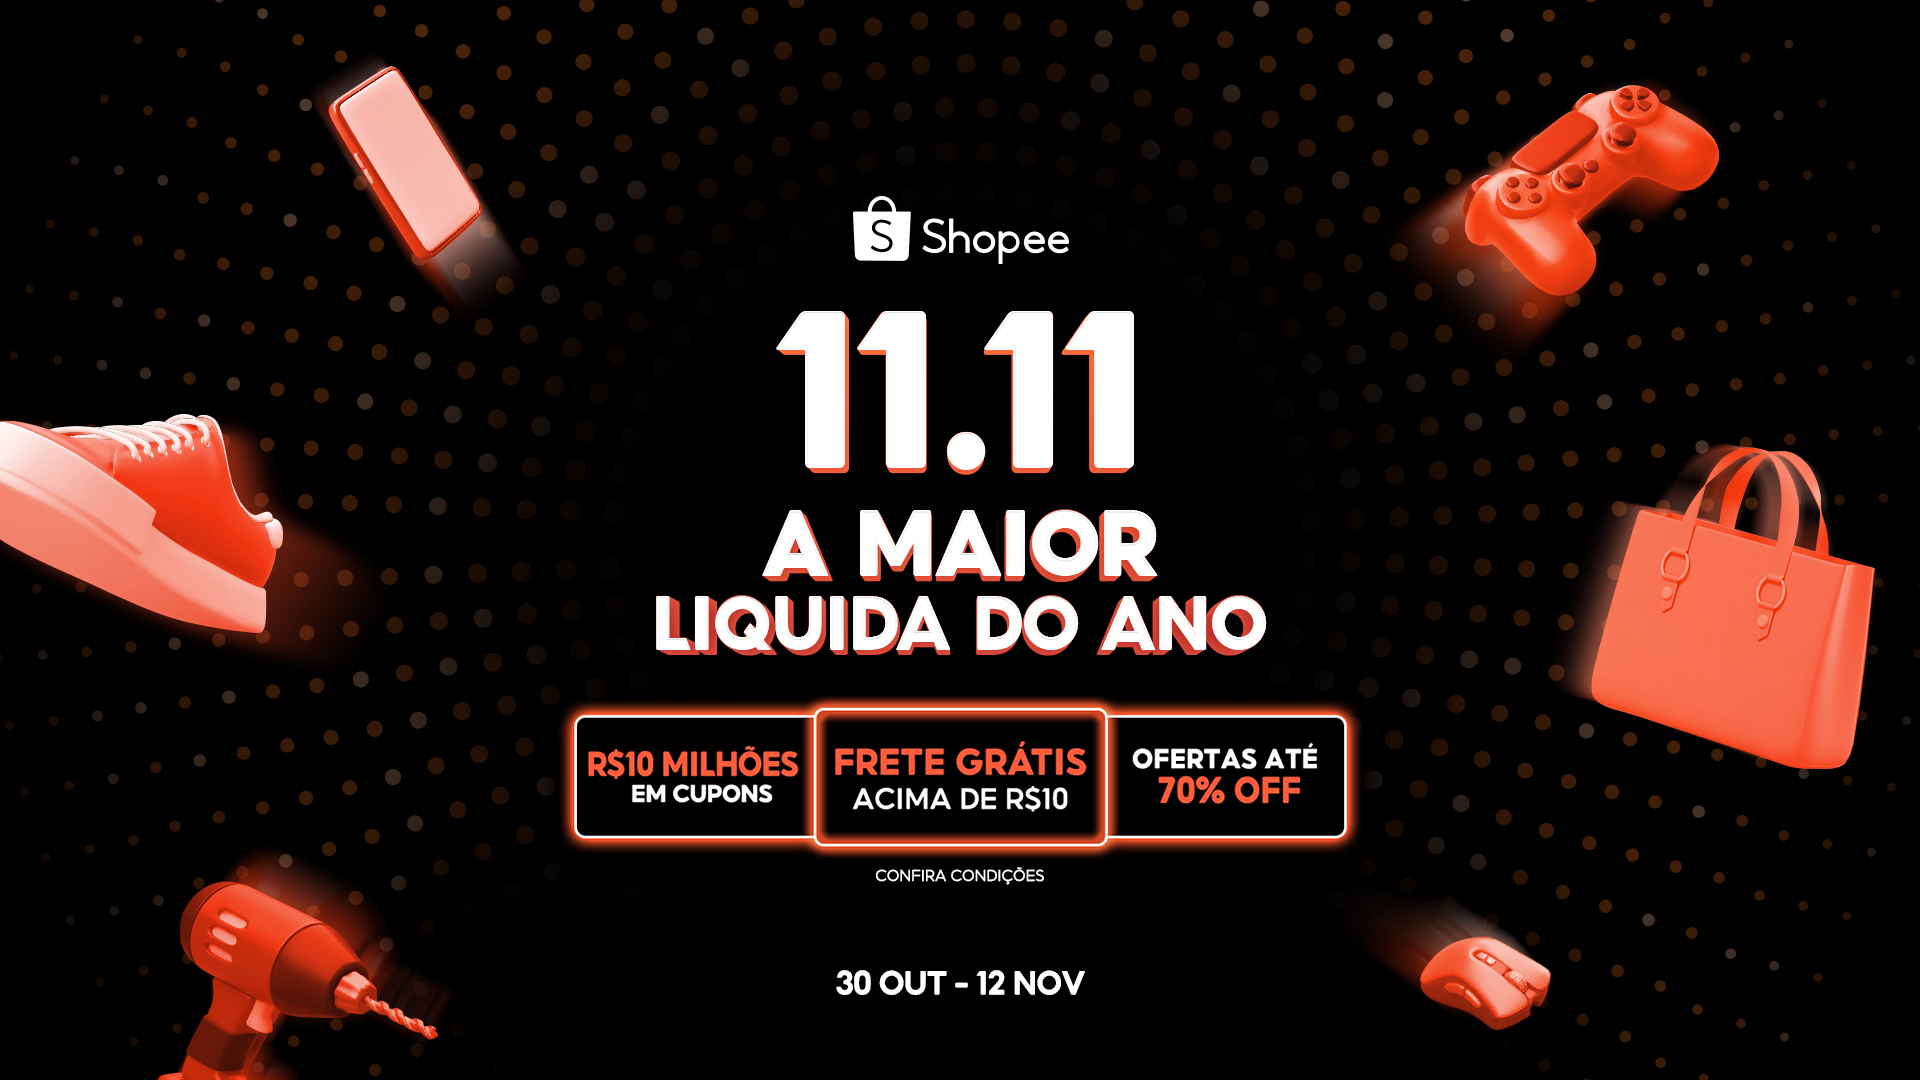 Shopee Brasil Ofertas incríveis. Melhores preços do mercado, cyber